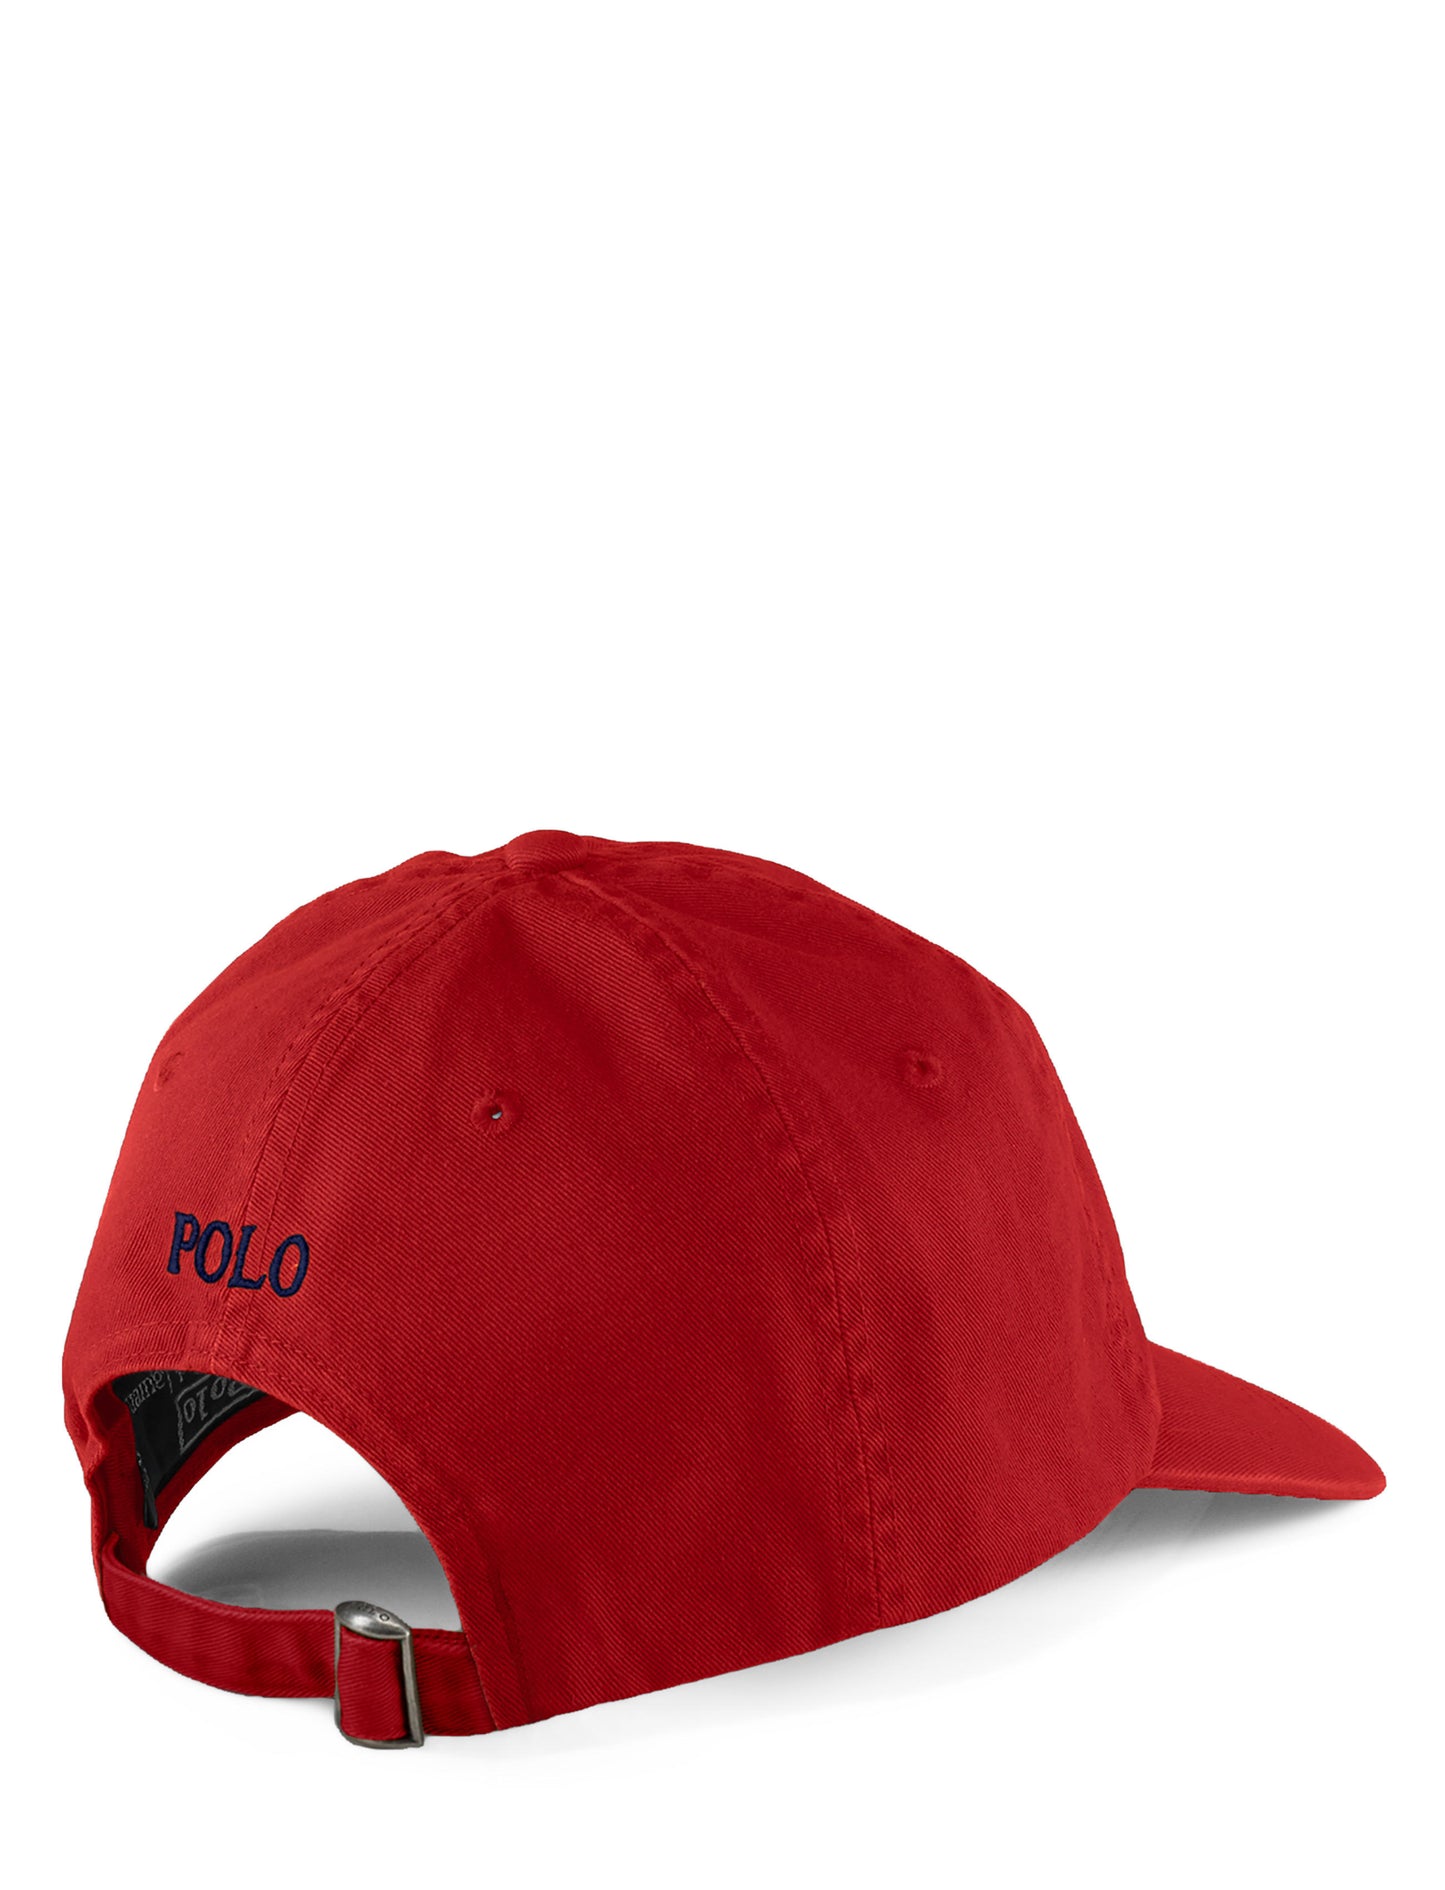 Polo Ralph Lauren Chino Baseball Cap Red